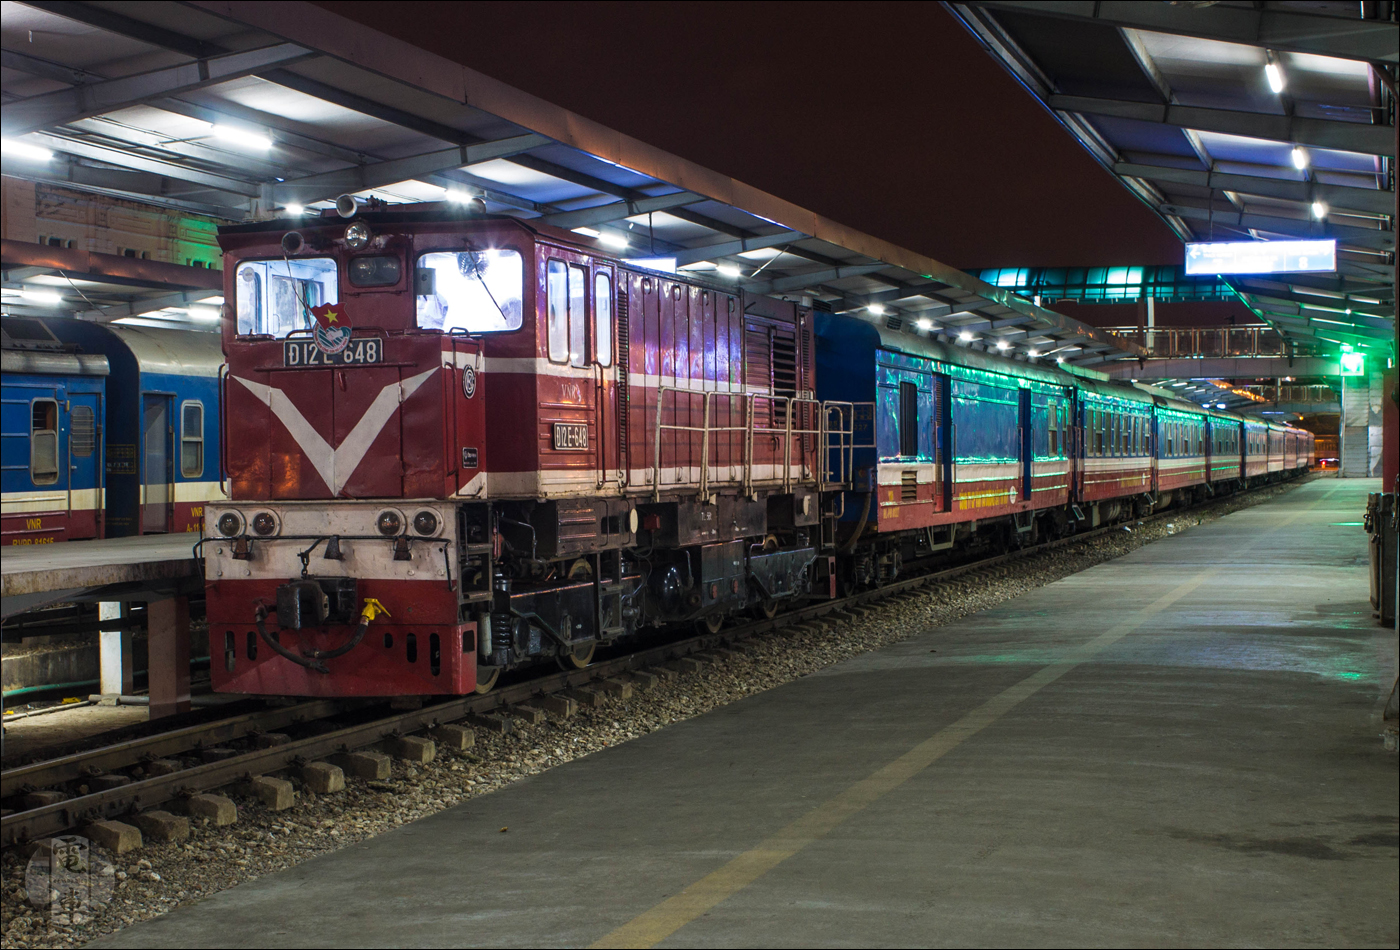 A már jól ismert D12E sorozat egy újabb tagja a Haiphong felé tartó HP1-es vonat élén.